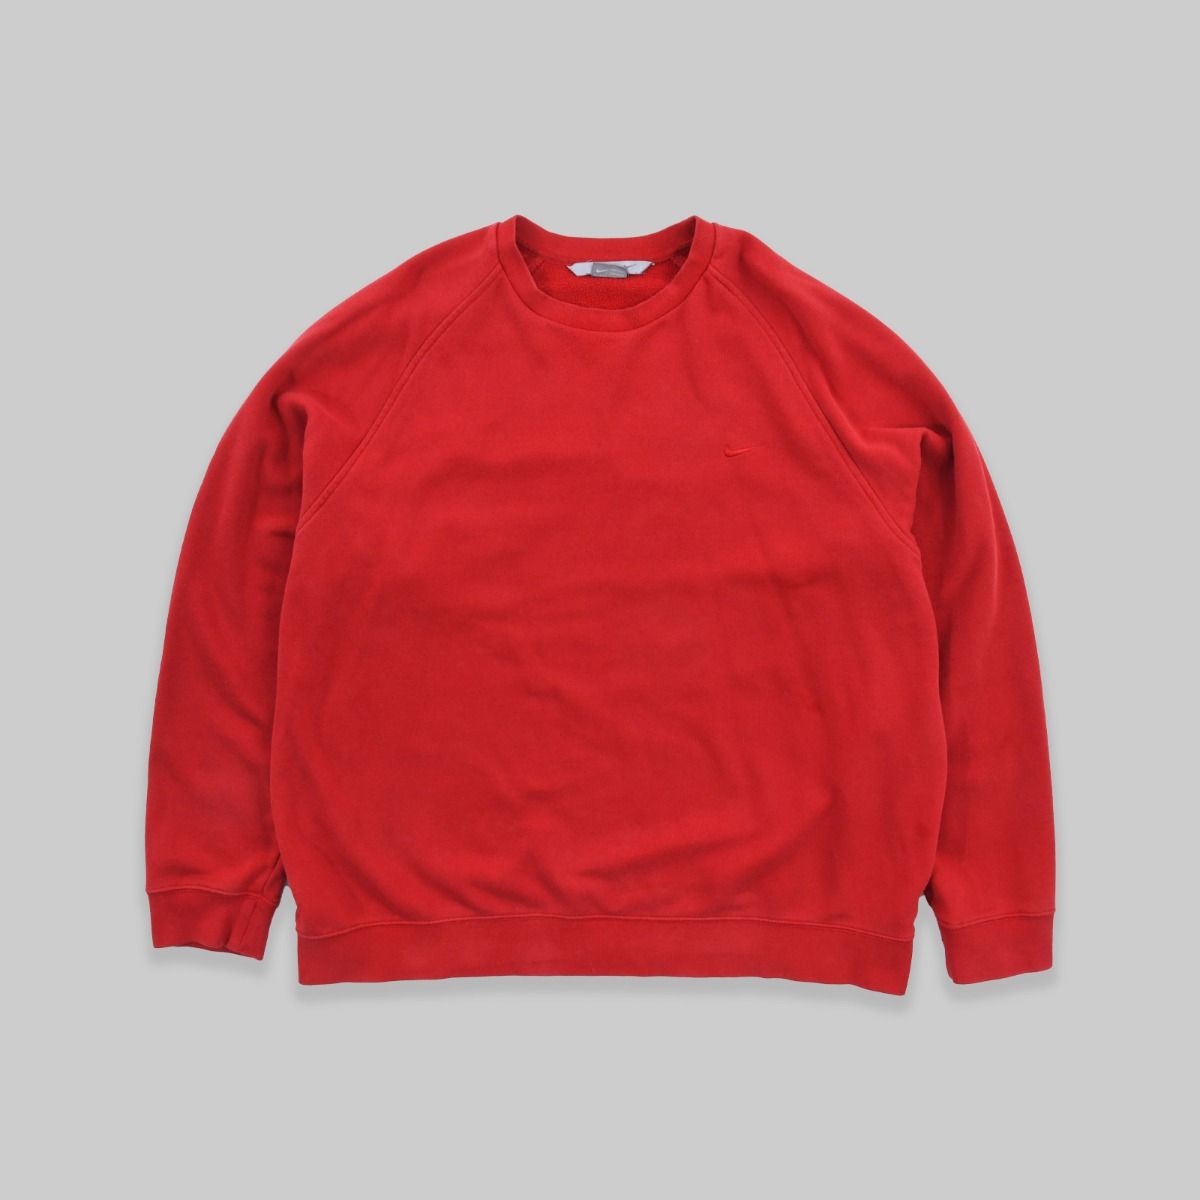 Nike Early 2000s Sweatshirt 